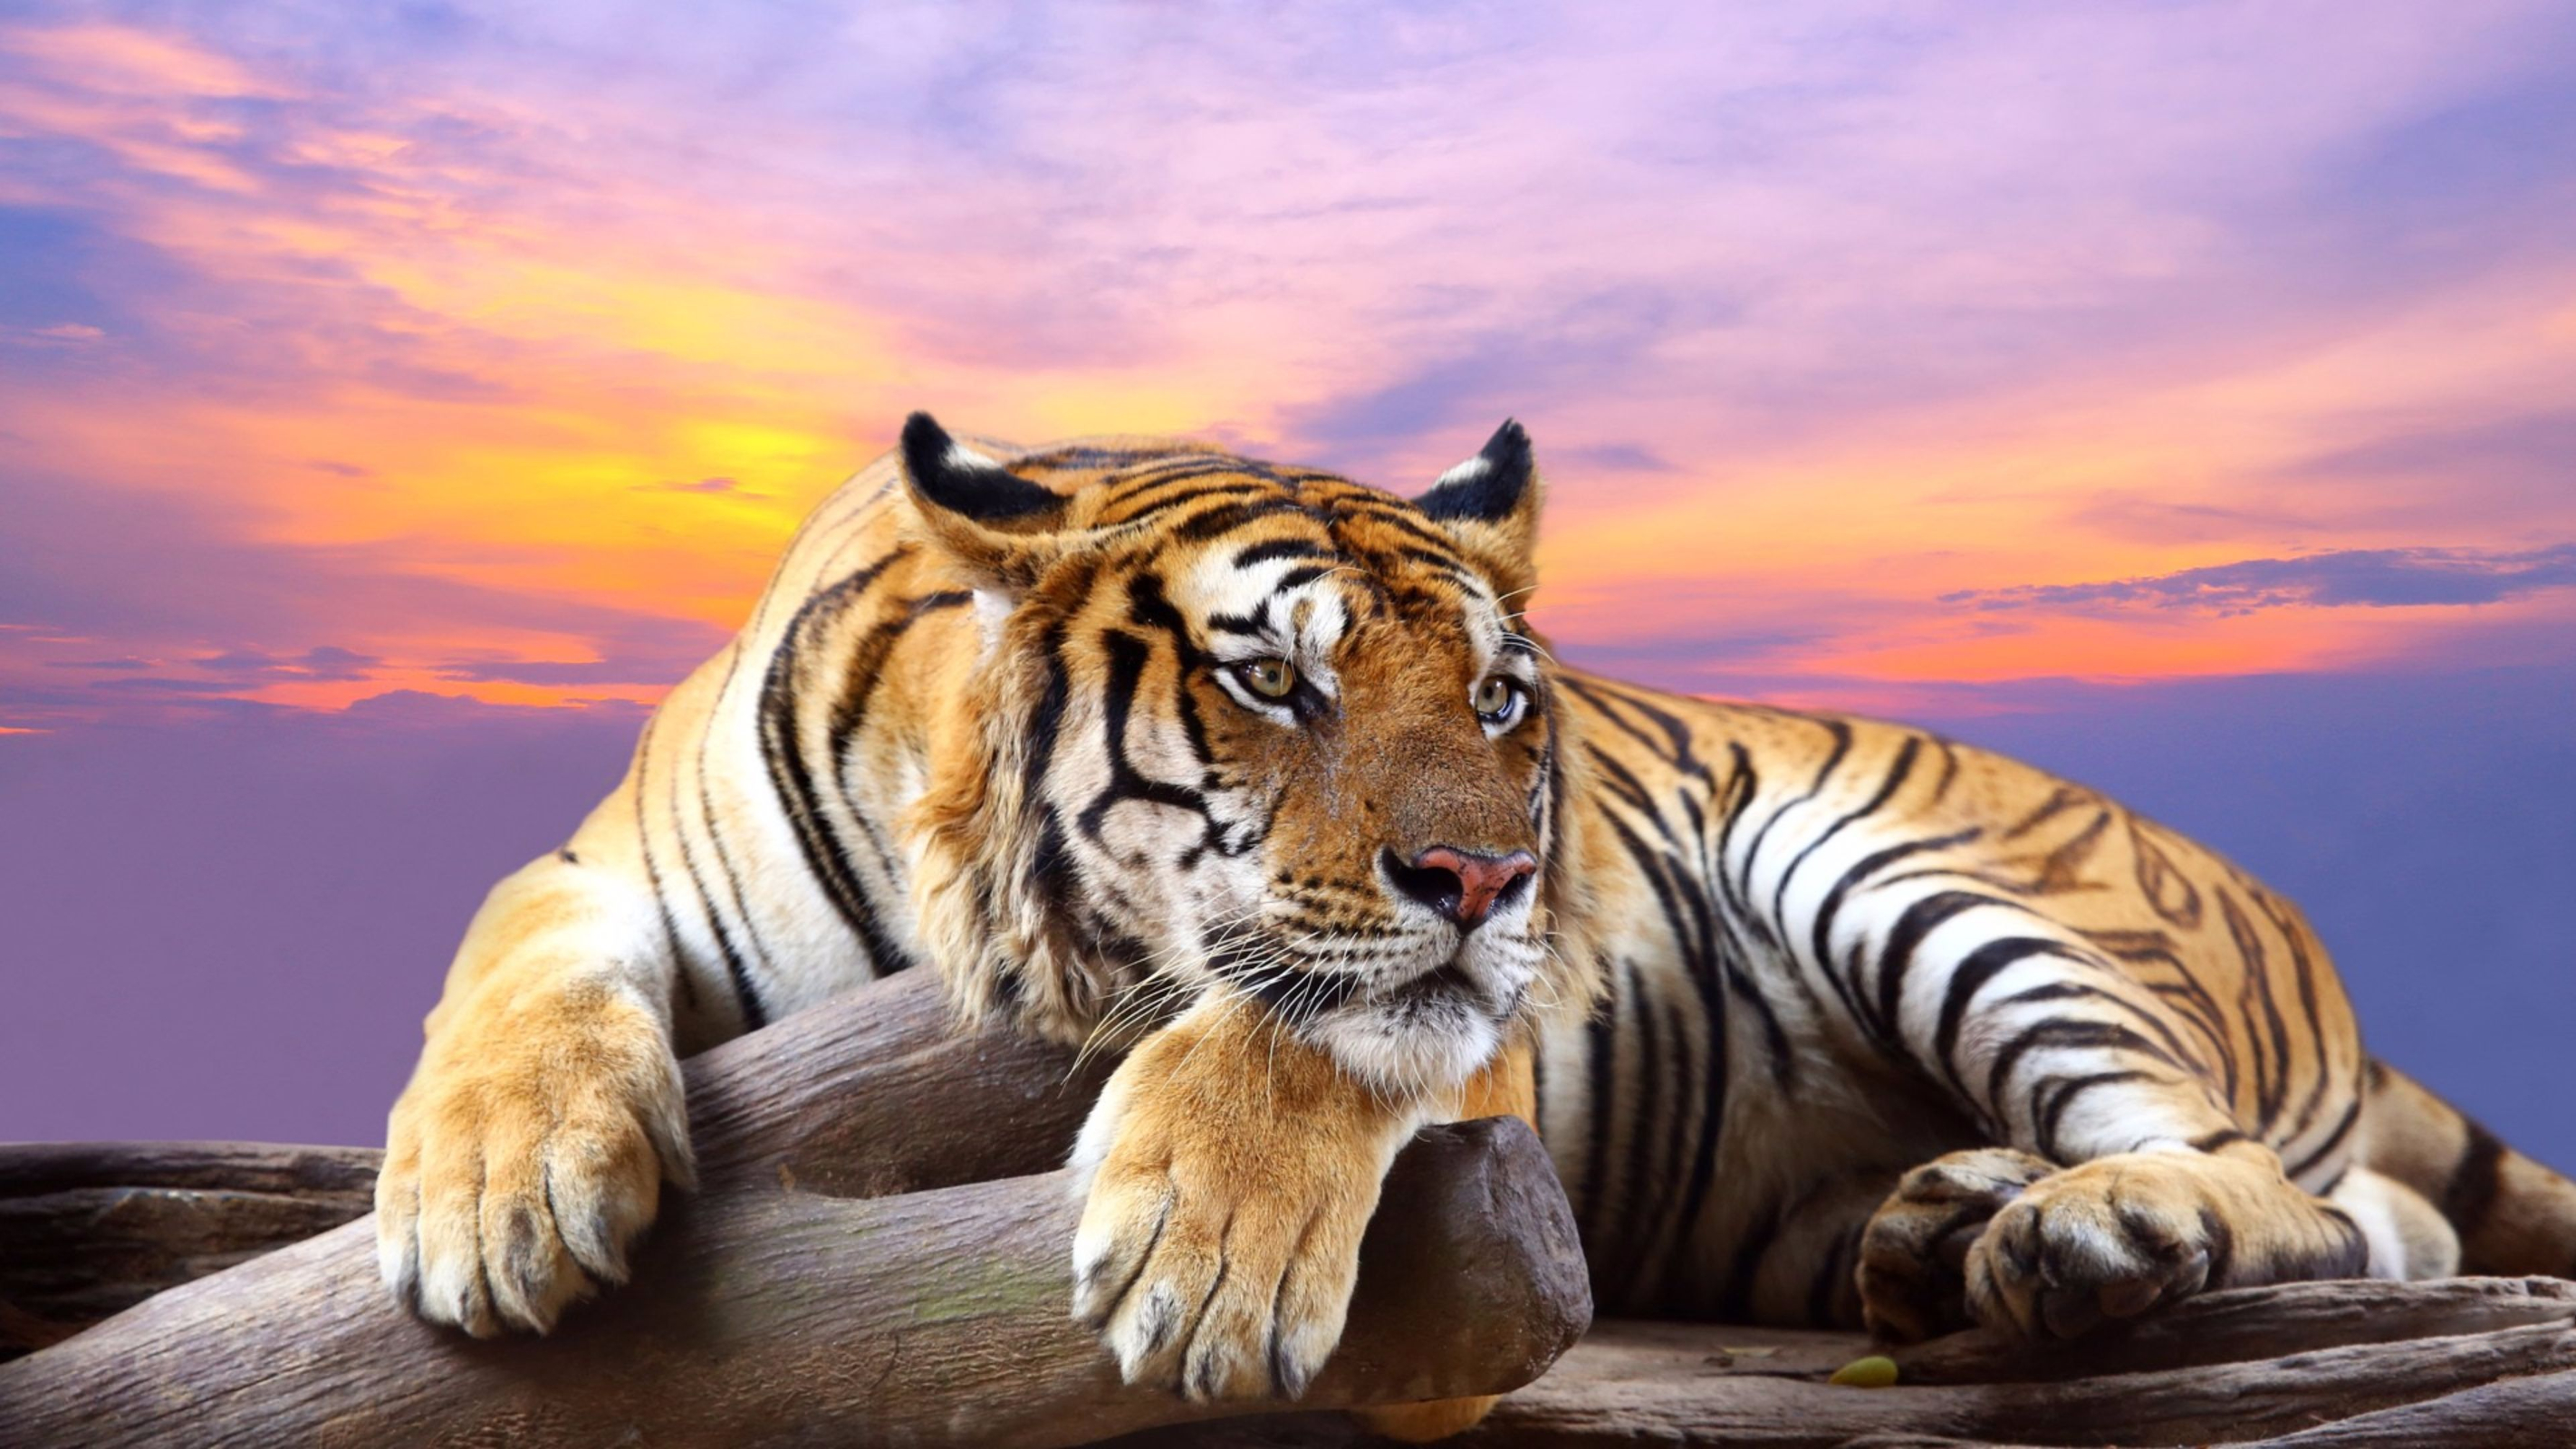 407307 免費下載壁紙 动物, 老虎, 休息, 日落, 猫 屏保和圖片